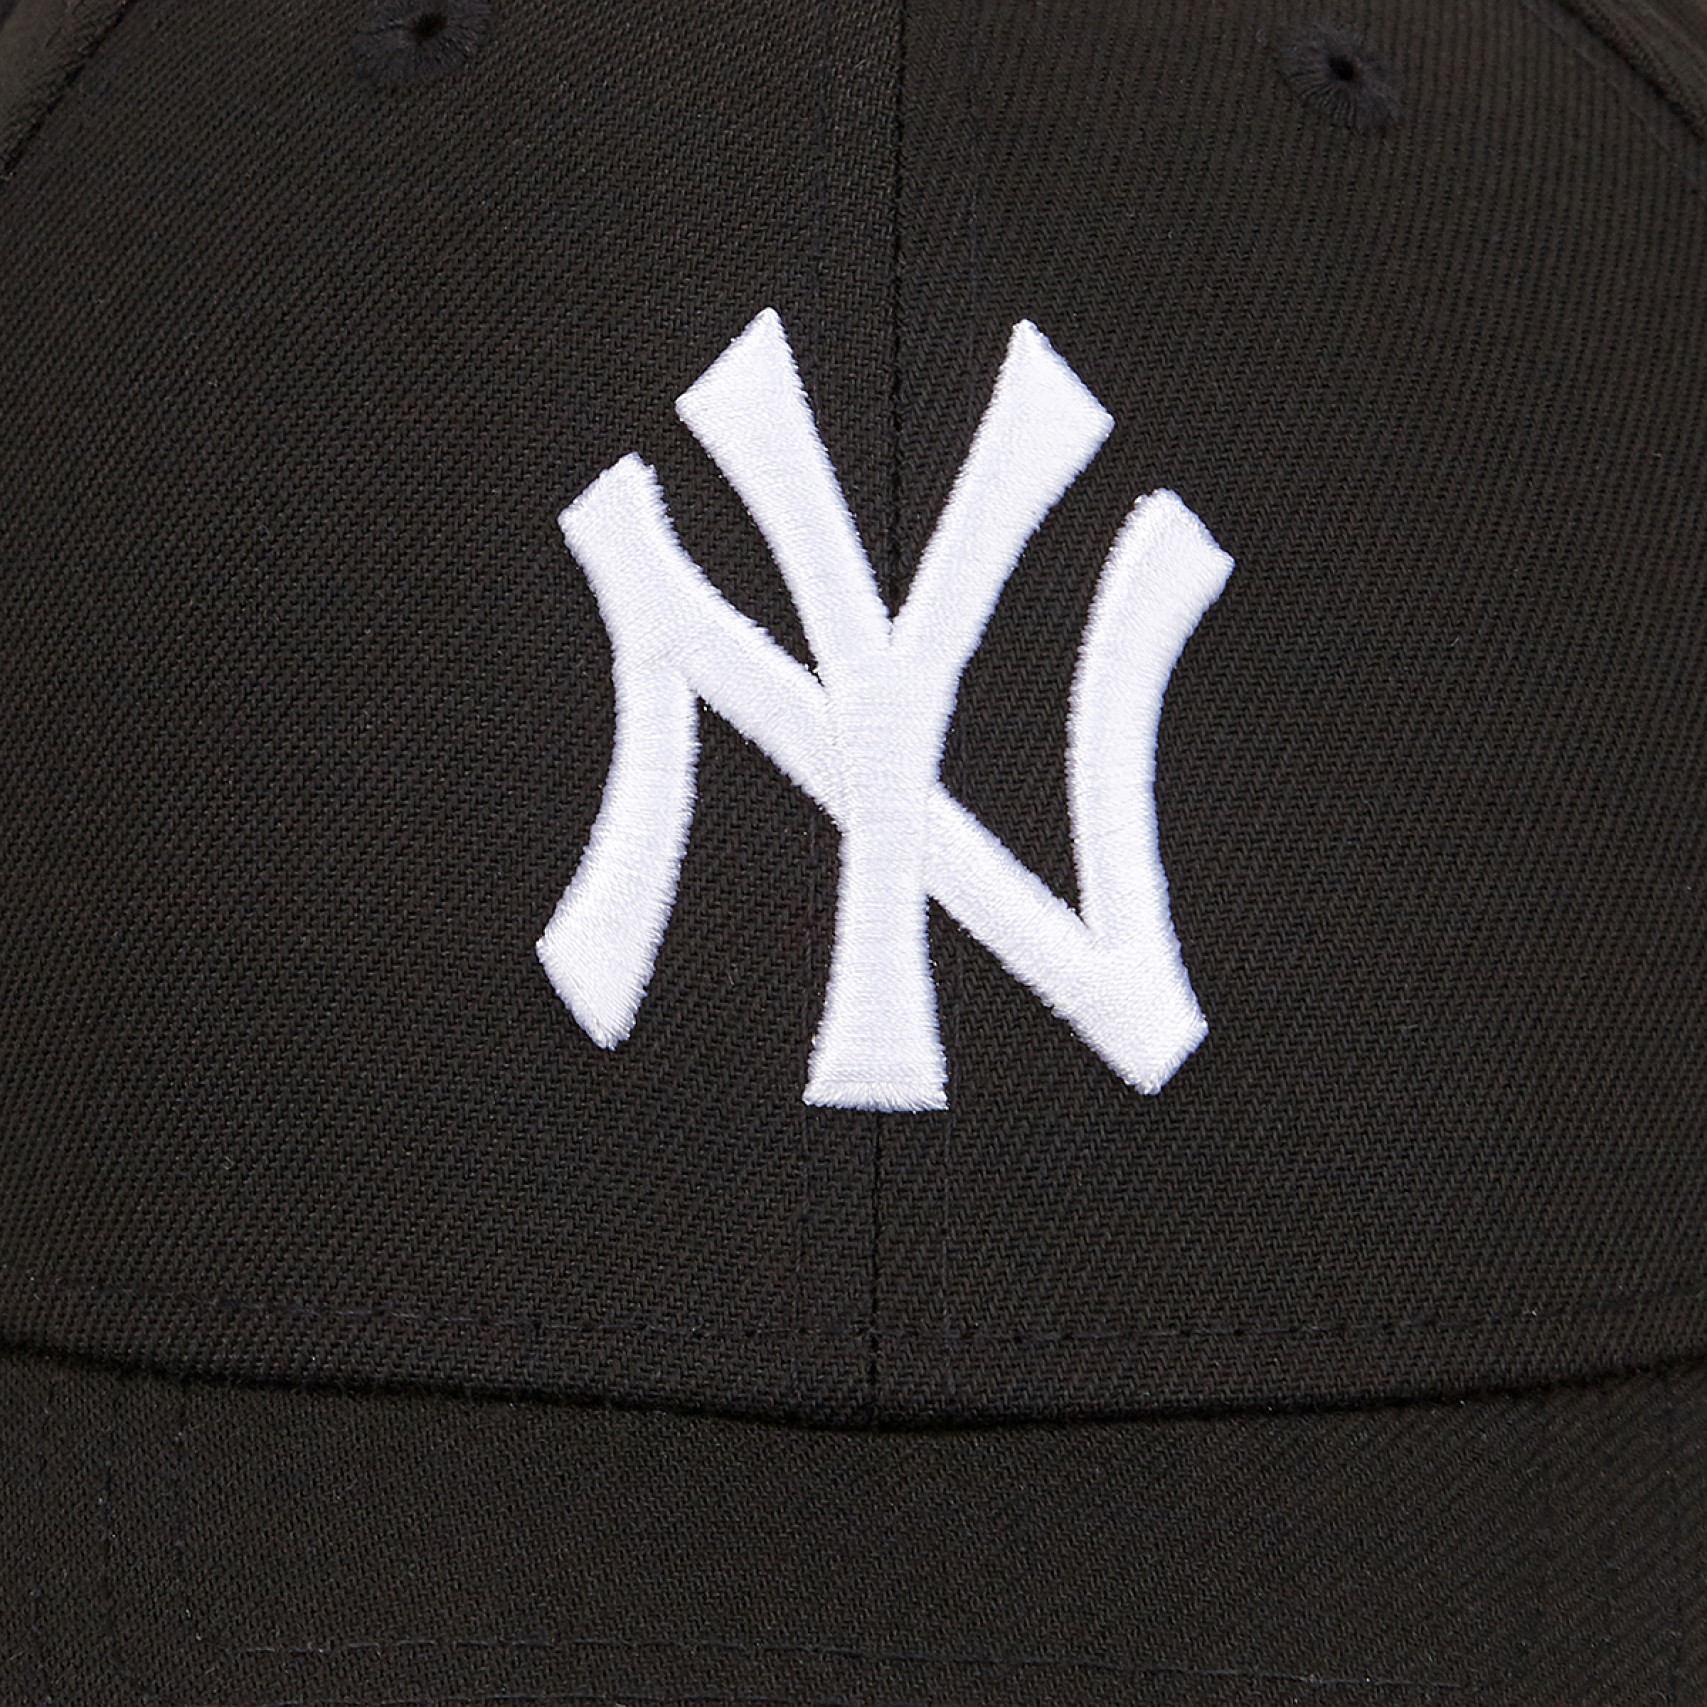 MLB 화이트 온 블랙 뉴욕 양키스 볼캡 / 14205806